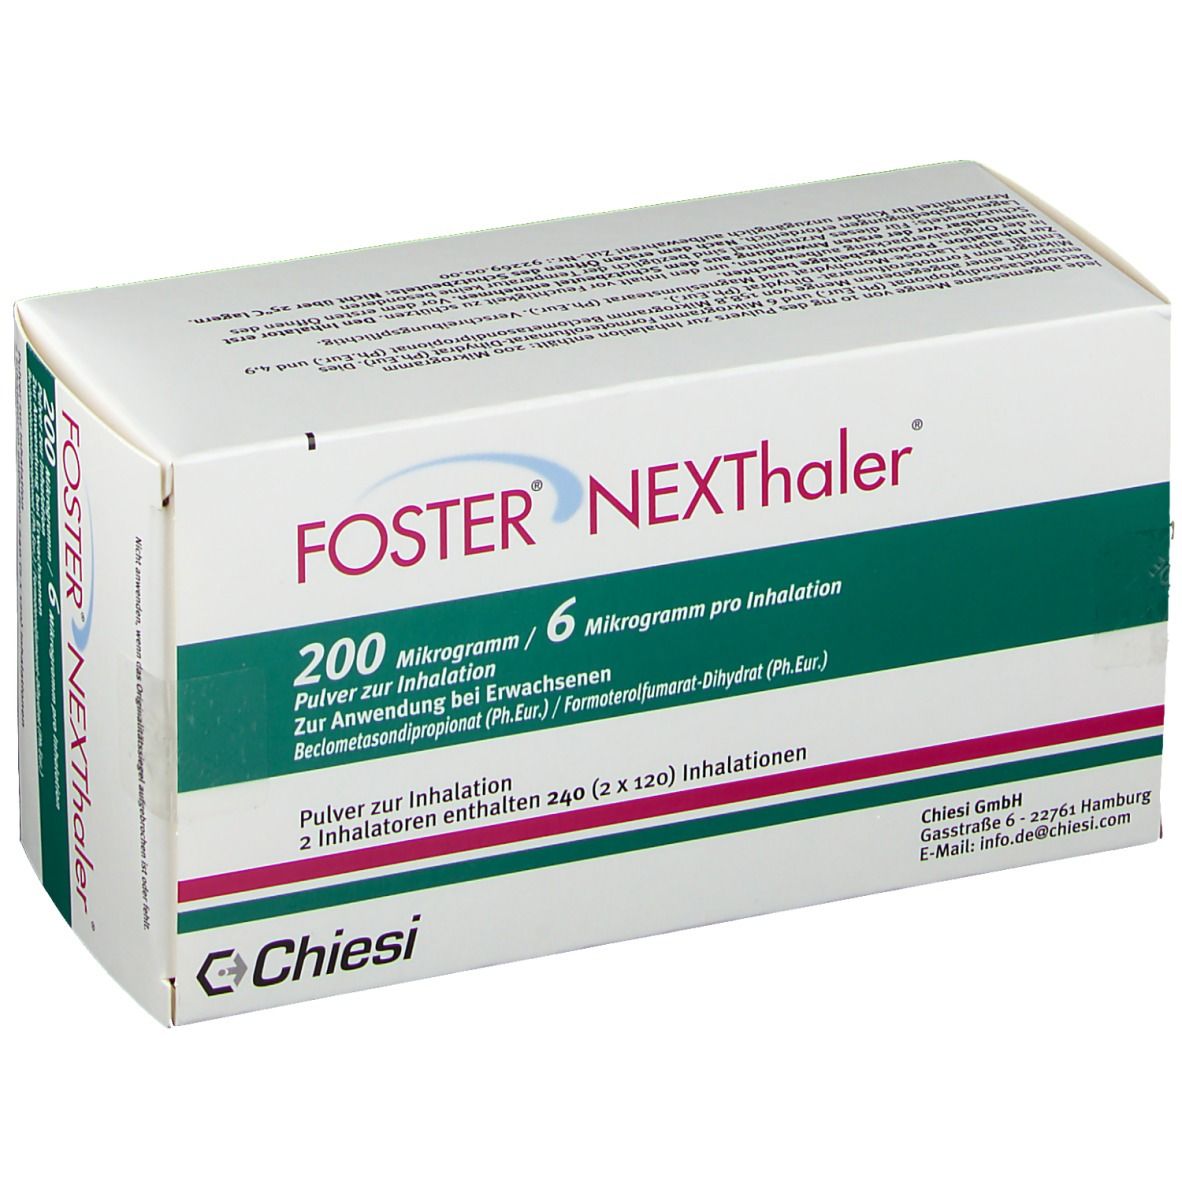 FOSTER® NEXThaler® 200/6 µg